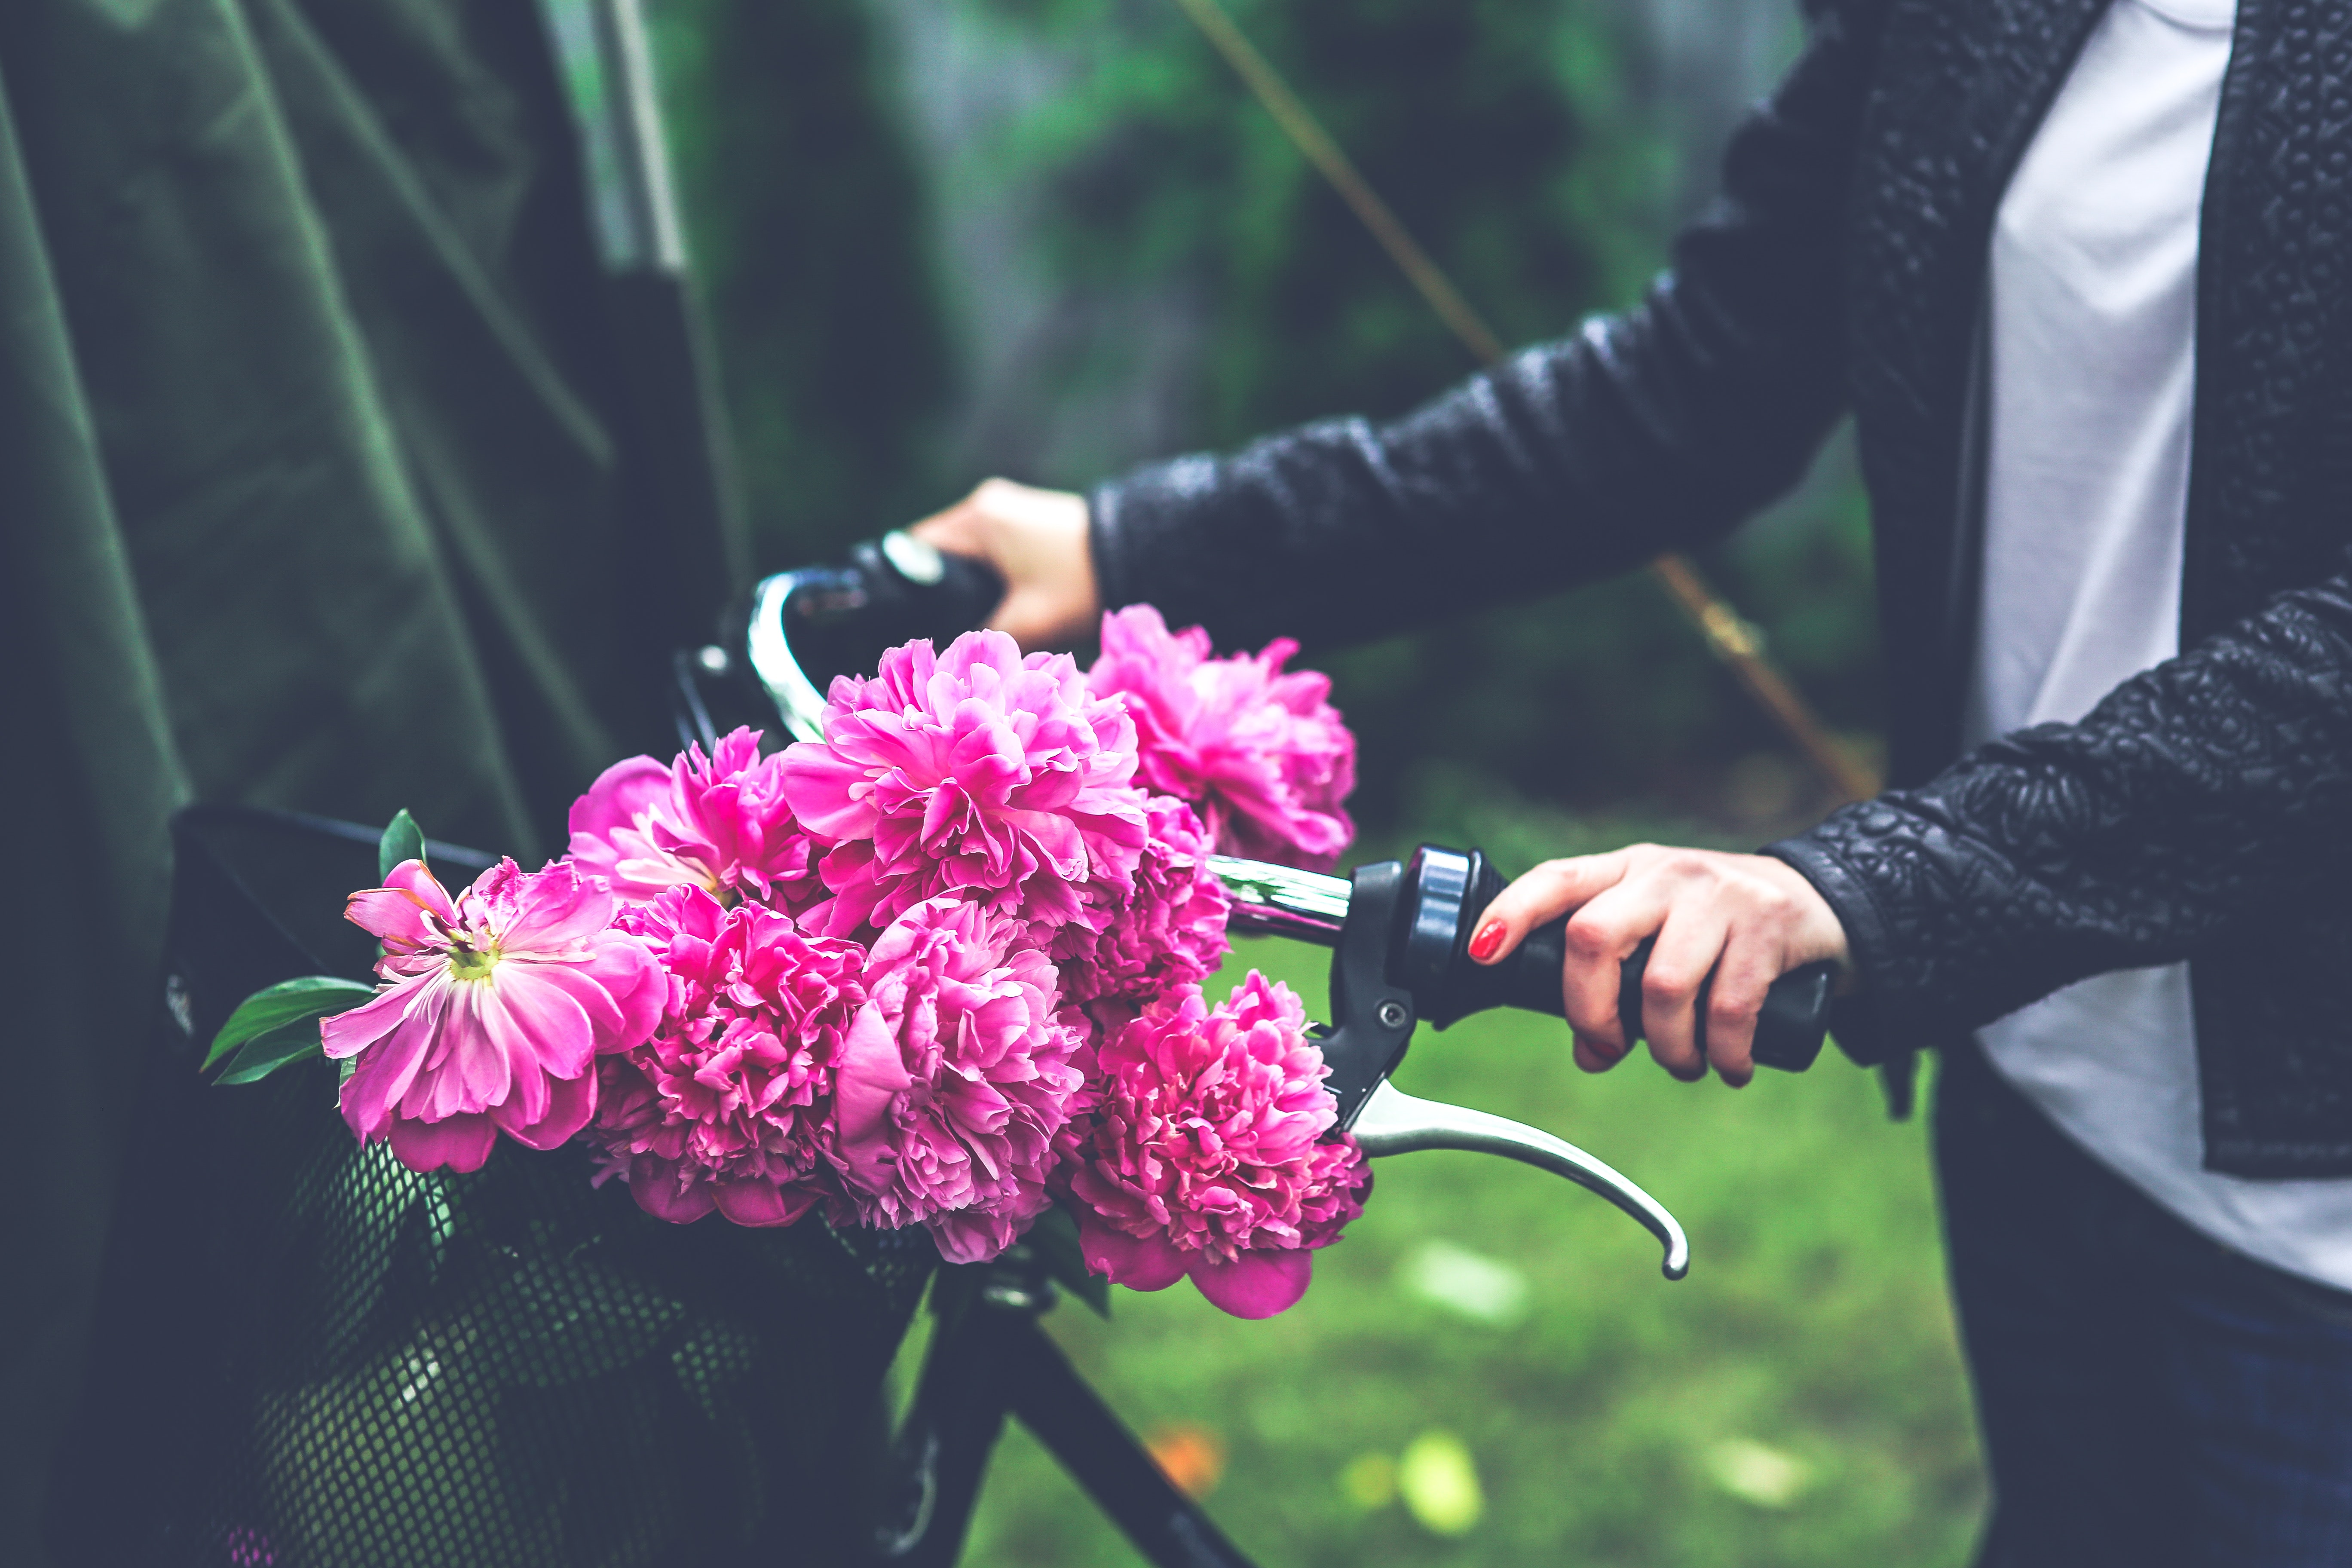 Bike with flower basket photo